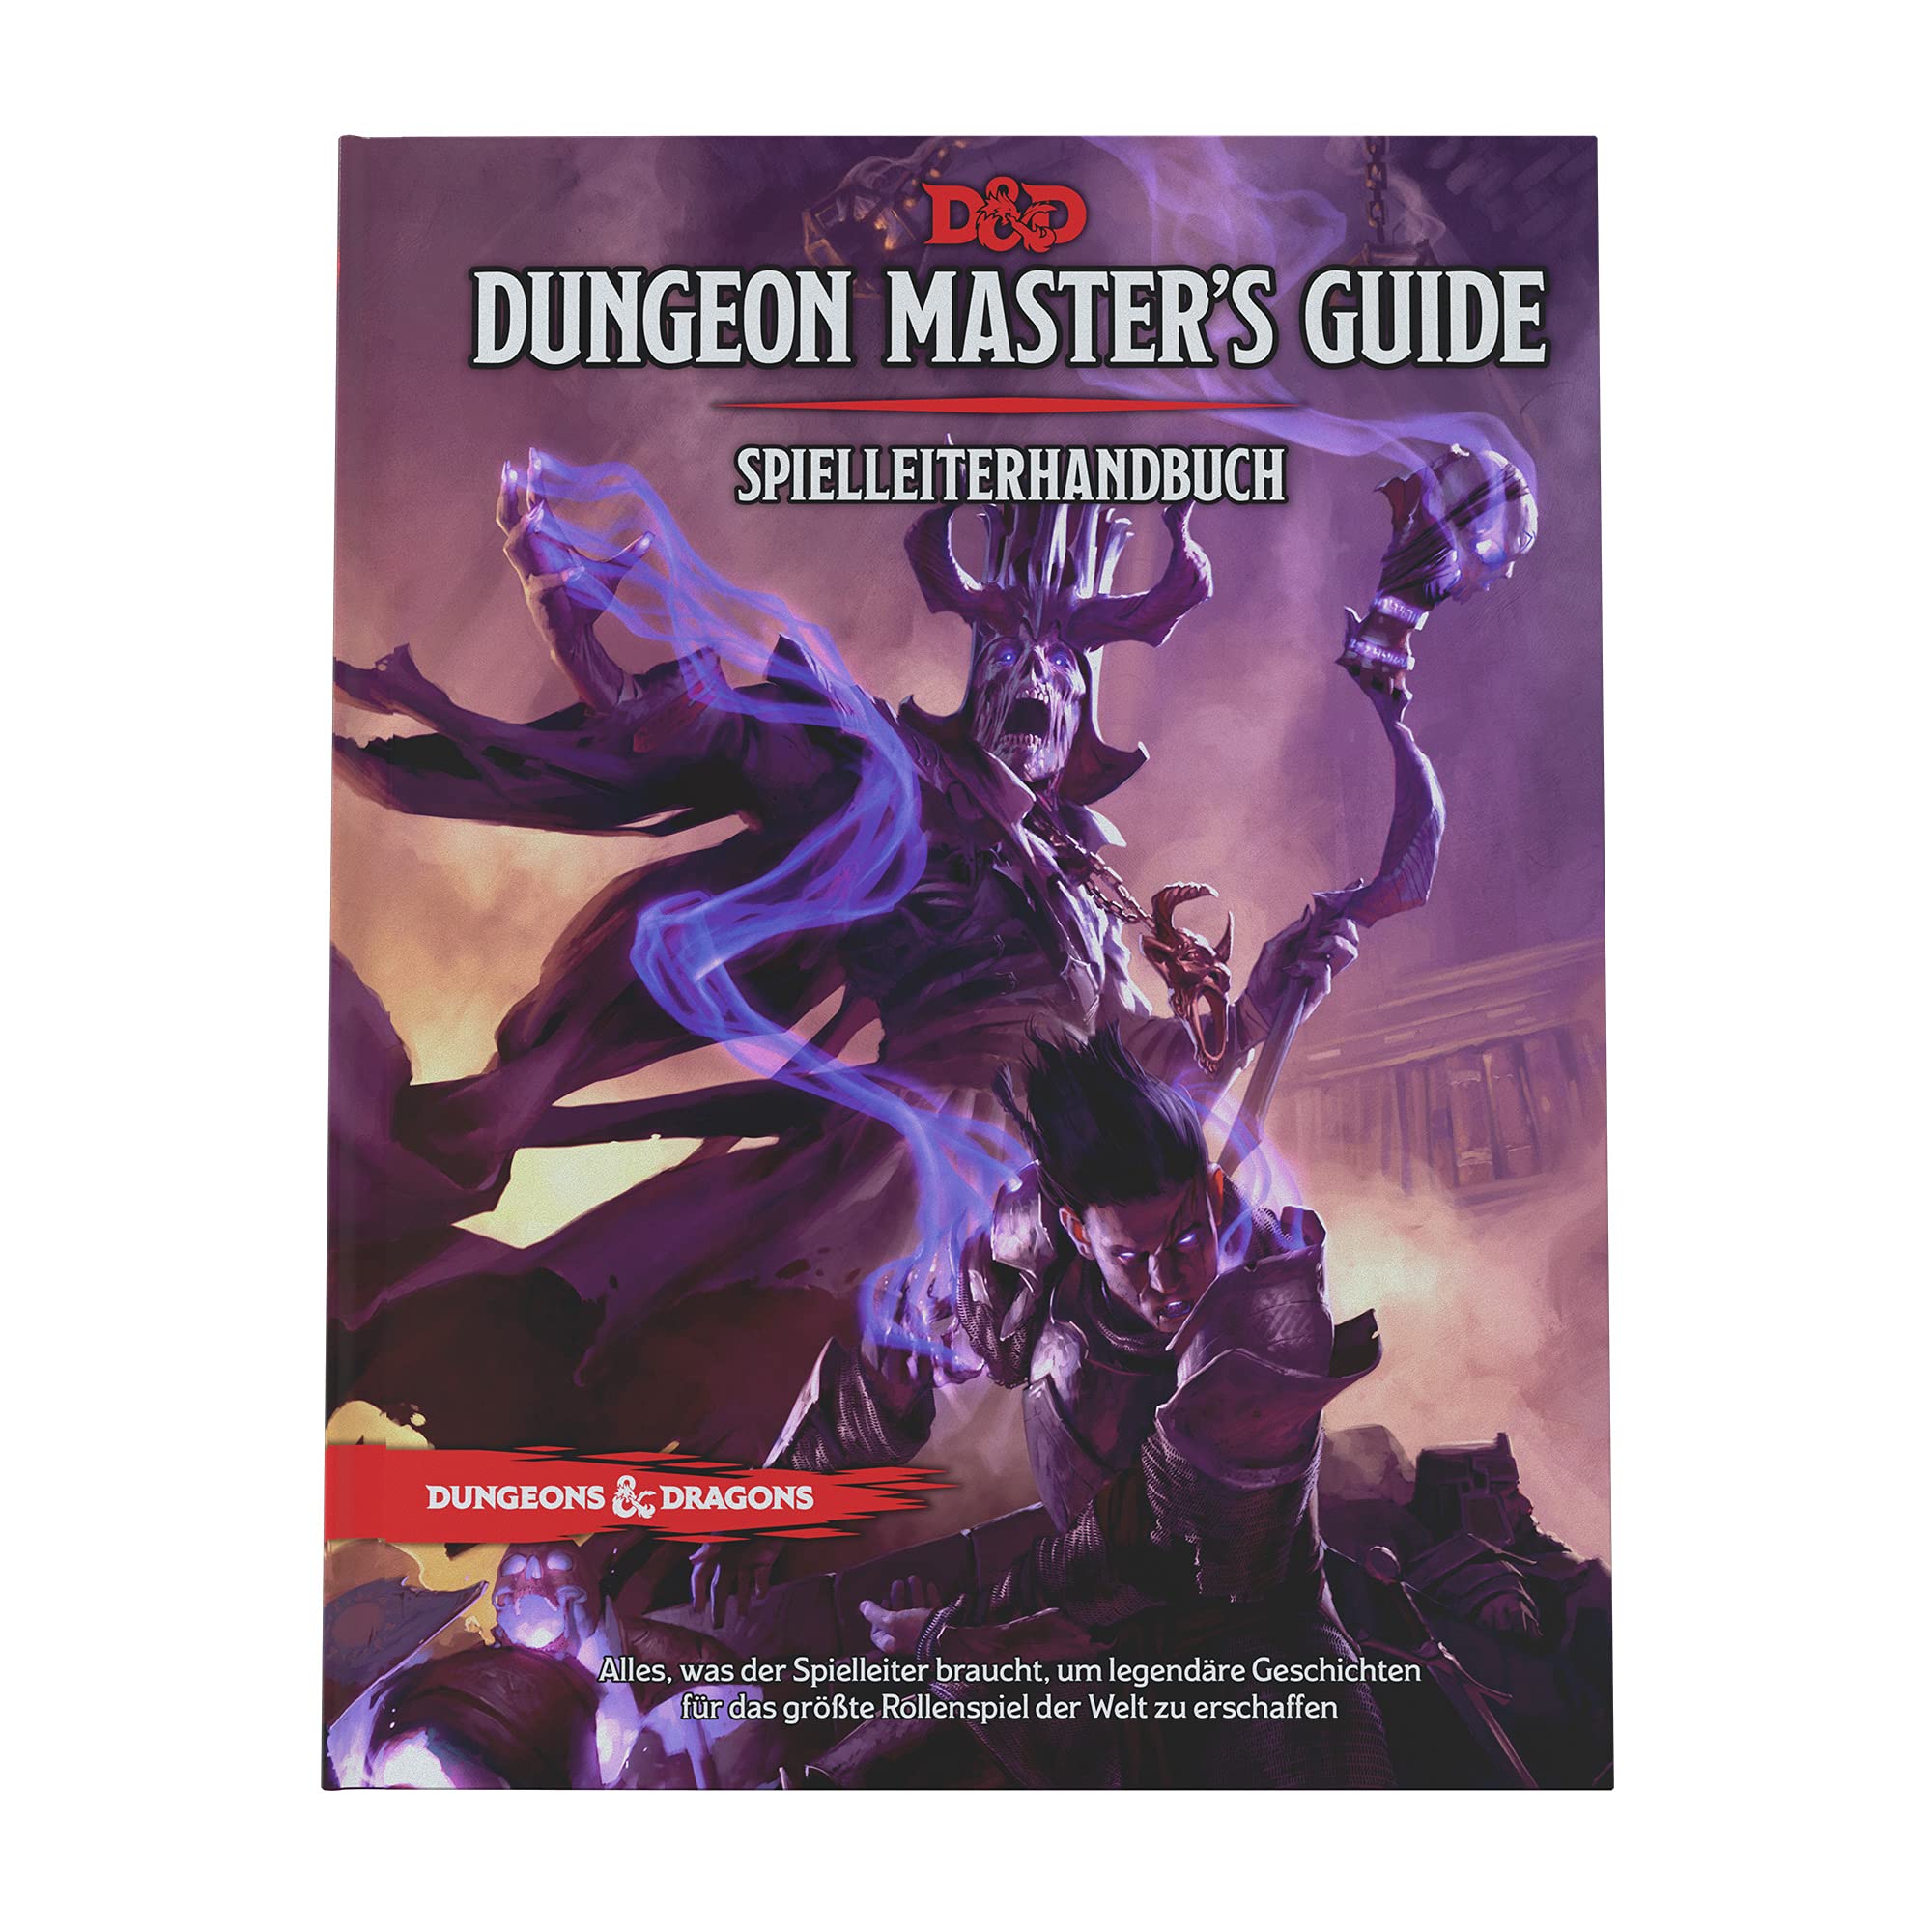 Dungeons & Dragons DE Spielleiterhandbuch Game Master's Guide 